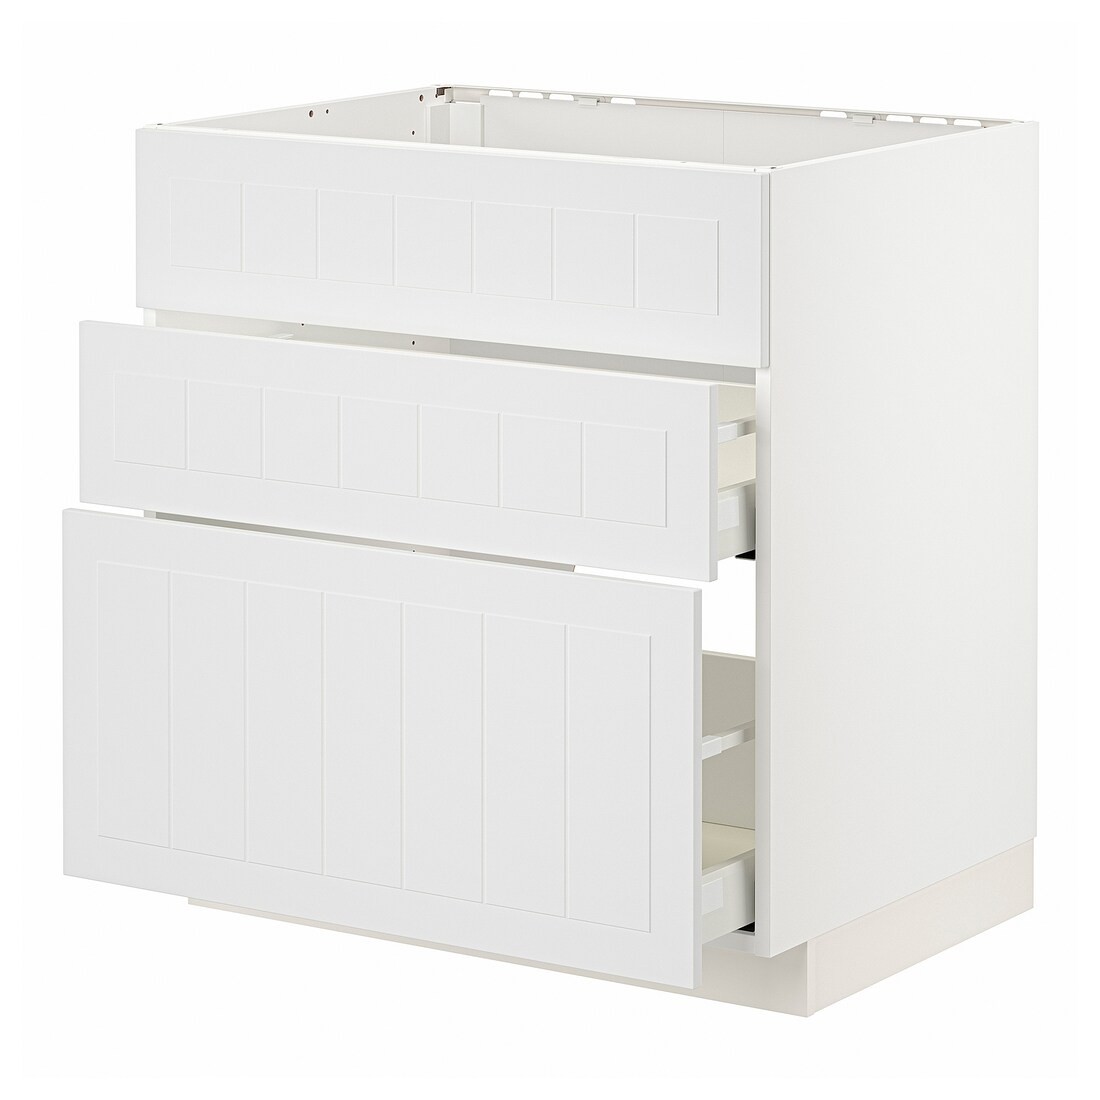 METOD МЕТОД / MAXIMERA МАКСІМЕРА Підлогова шафа для варочні панелі / витяжка з шухлядою, білий / Stensund білий, 80x60 см